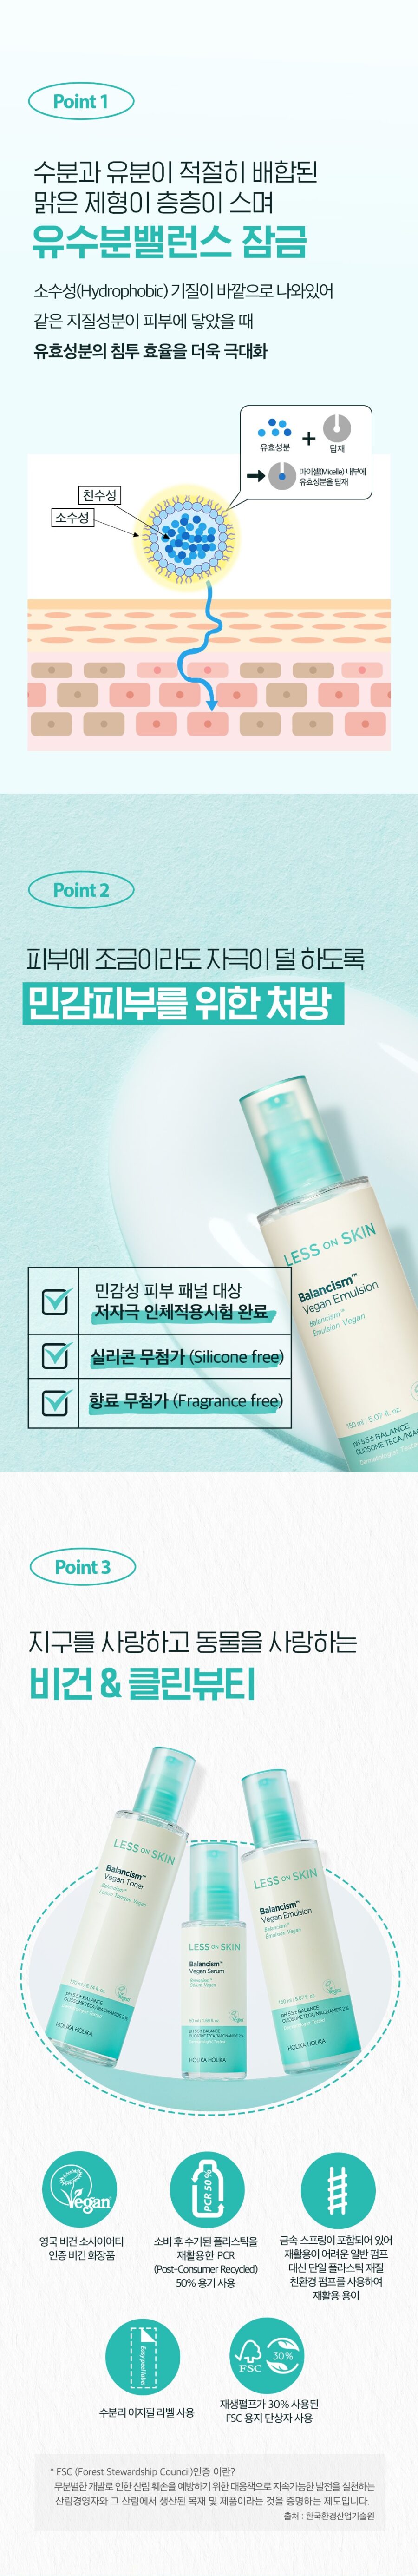 Holika Holika Less On Skin Balancism Vegan Emulsion korean skincare product online shop malaysia china india4